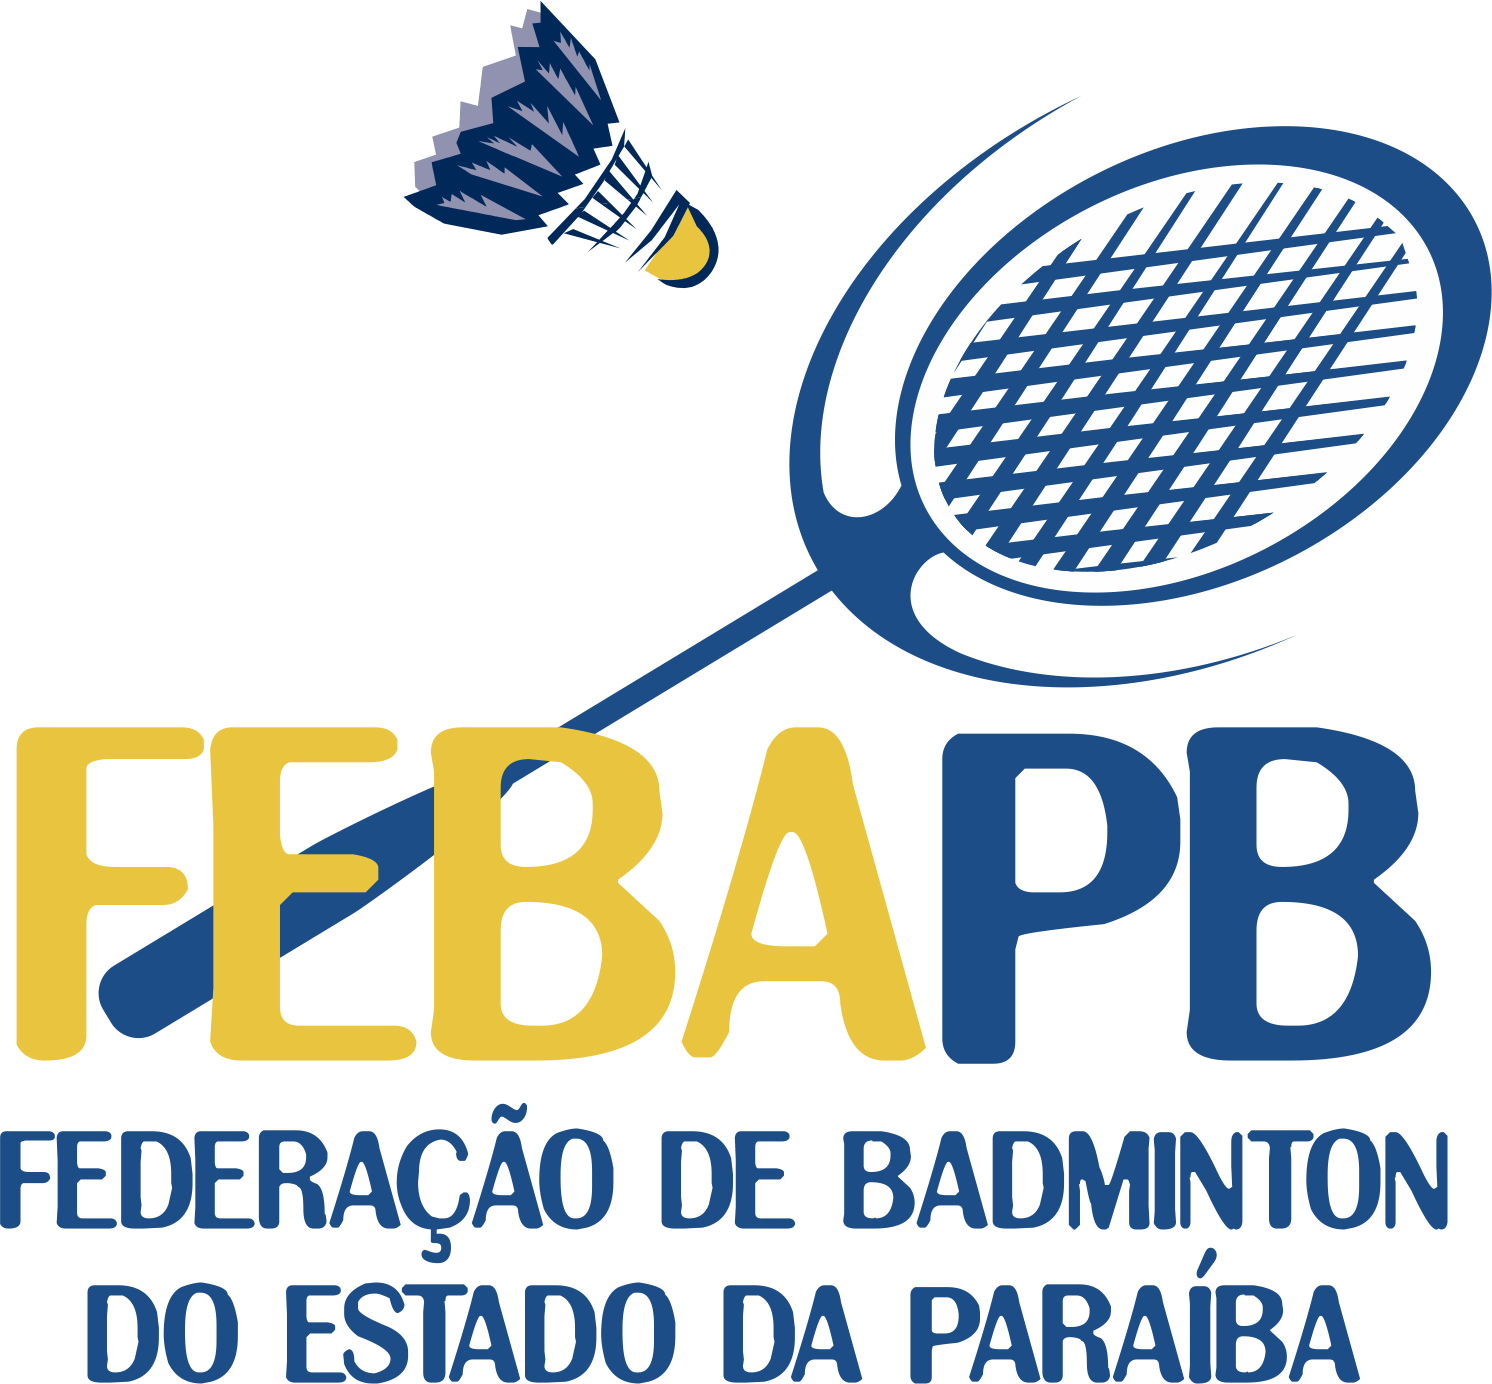 Febapb Federacao De Badminton Do Estado Da Paraiba